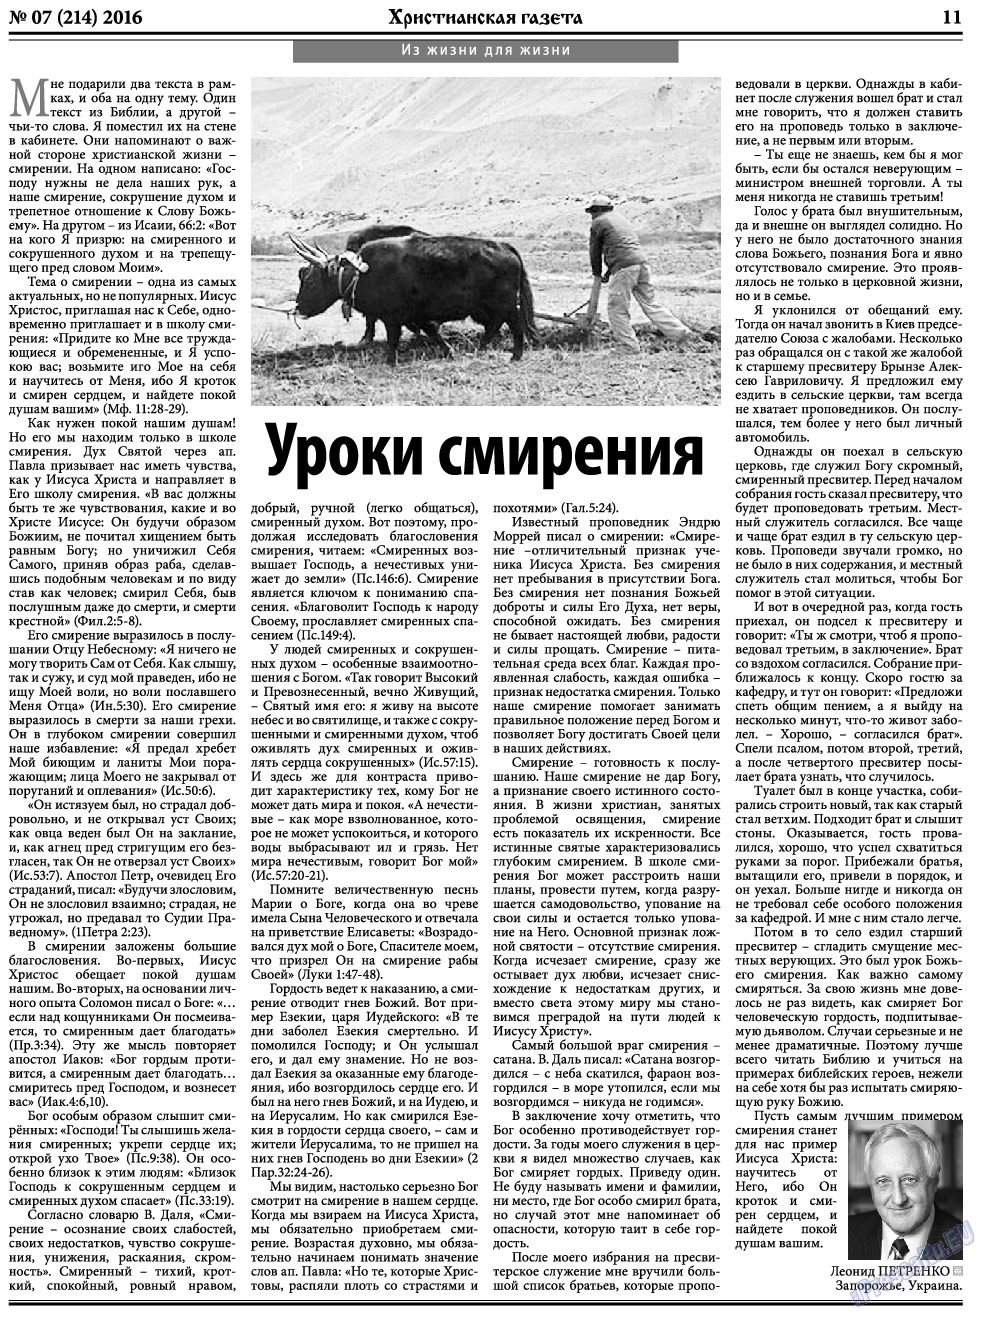 Христианская газета, газета. 2016 №7 стр.11